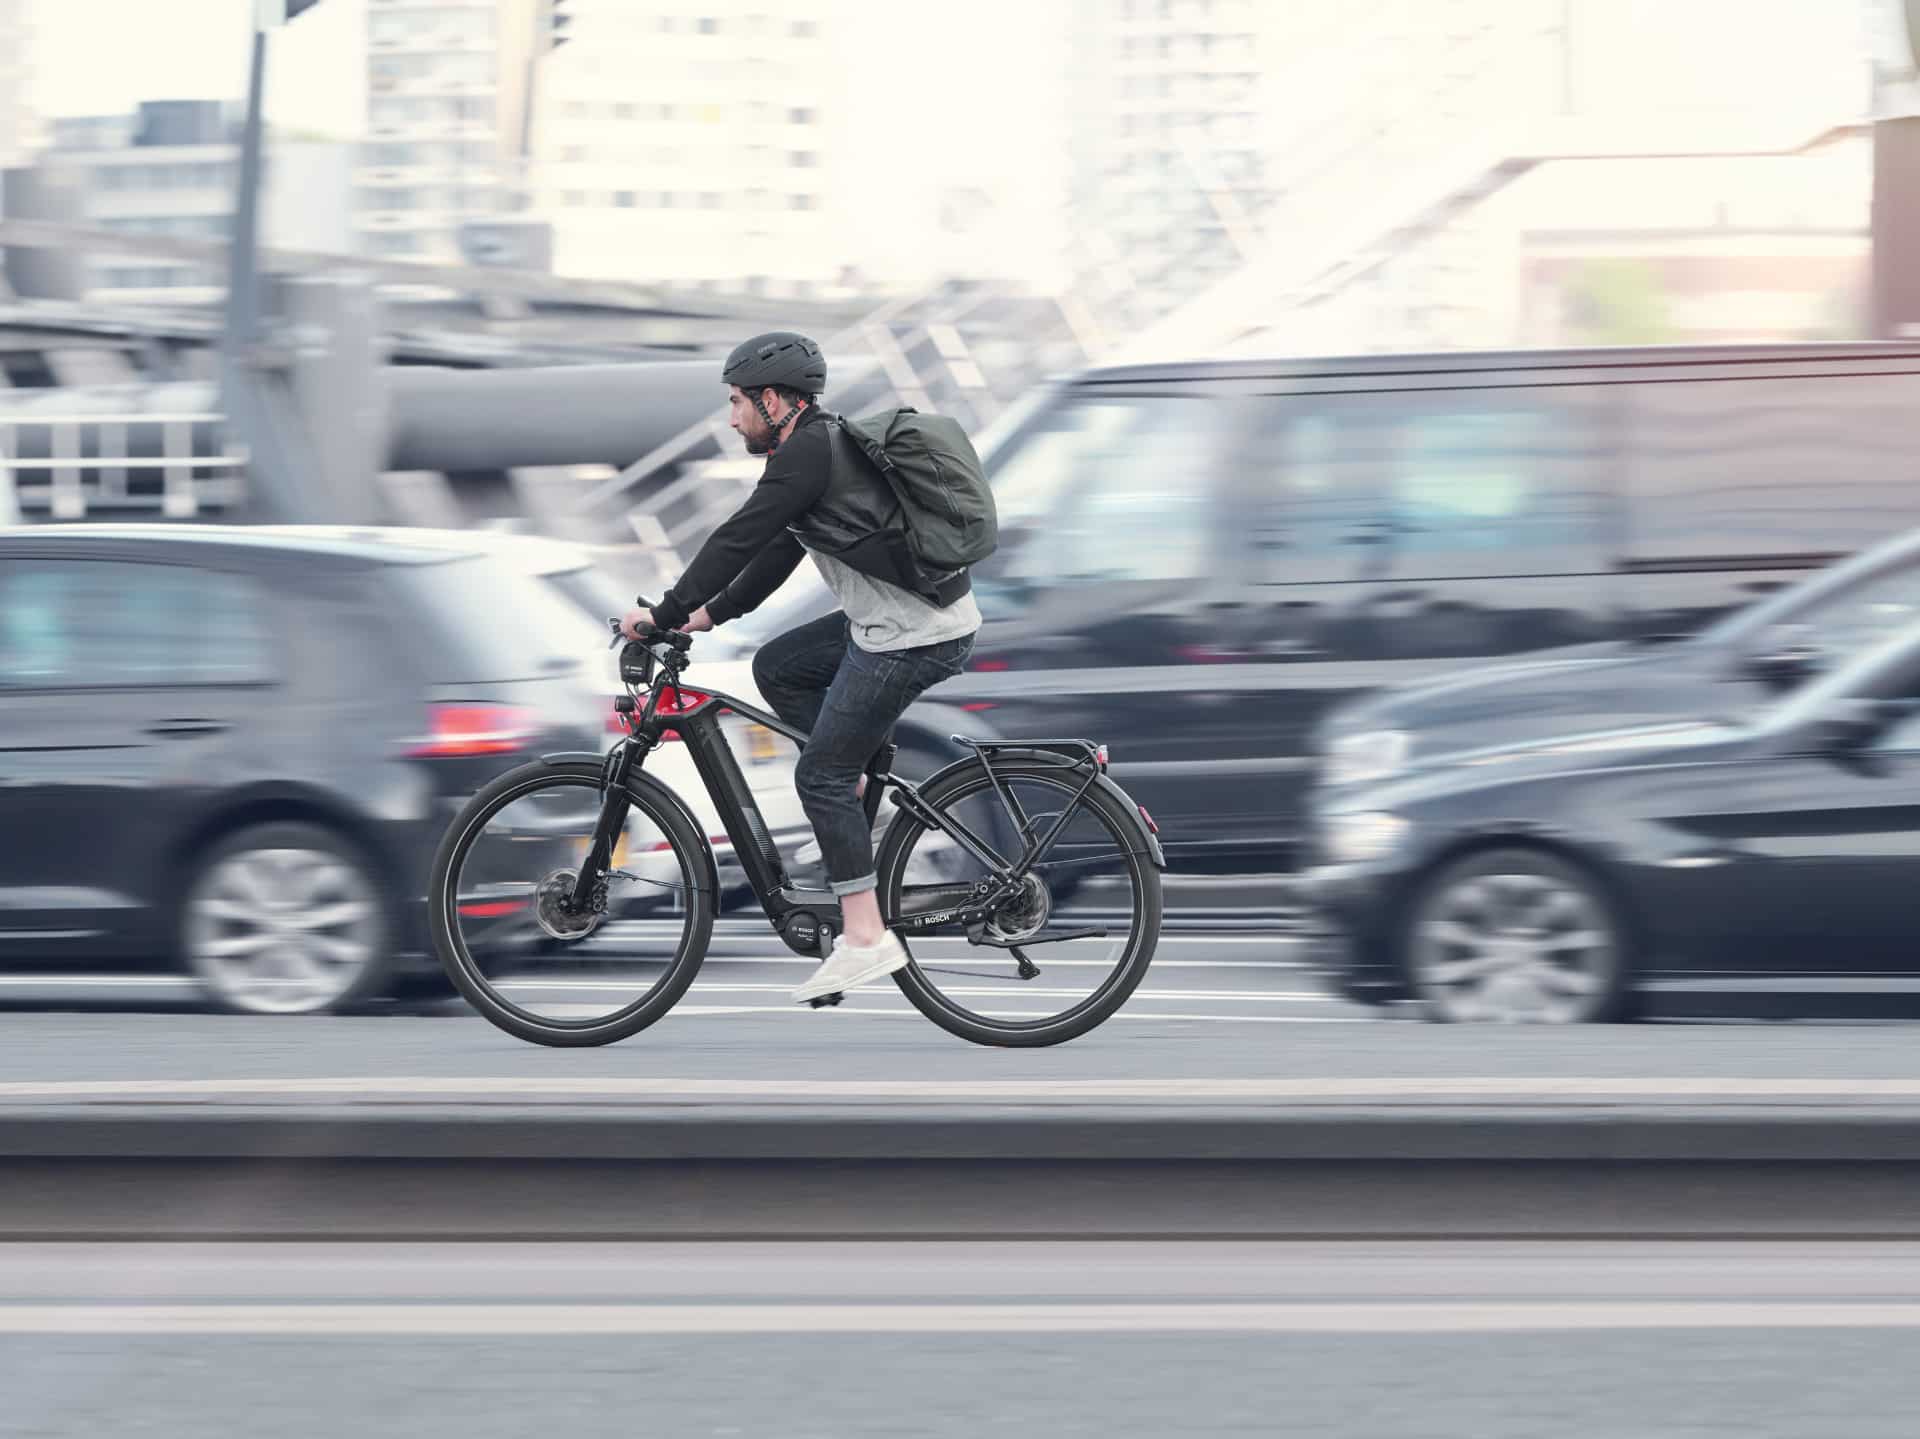 Dienstrad Leasing Anbieter, günstige E-Bikes, E-Mobilitätsförderung